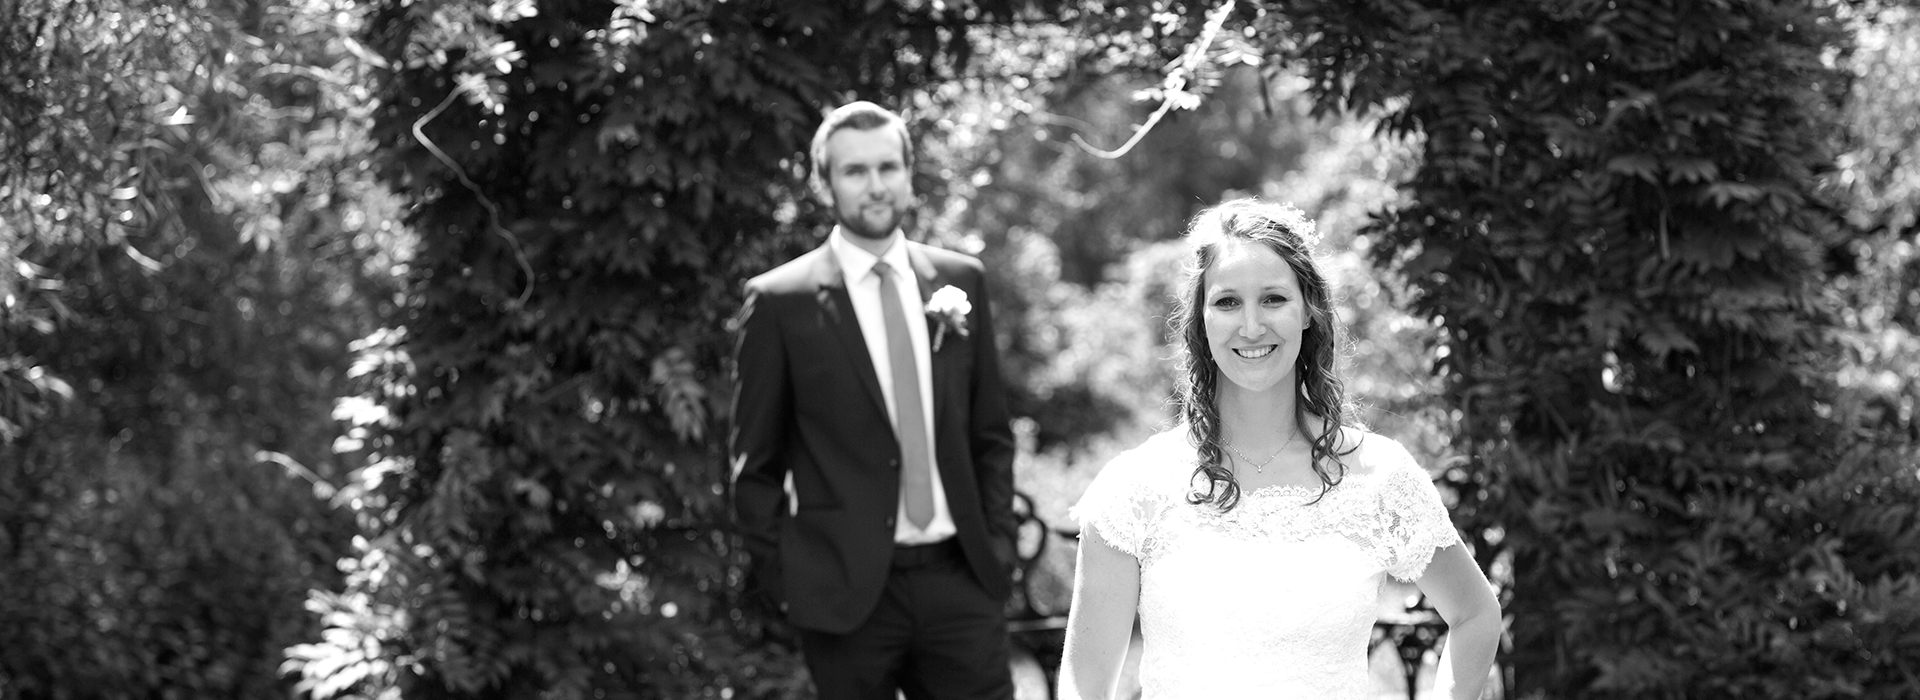 Hochzeitsfoto von Anna & Andreas auf Gut Höhne in Düsseldorf